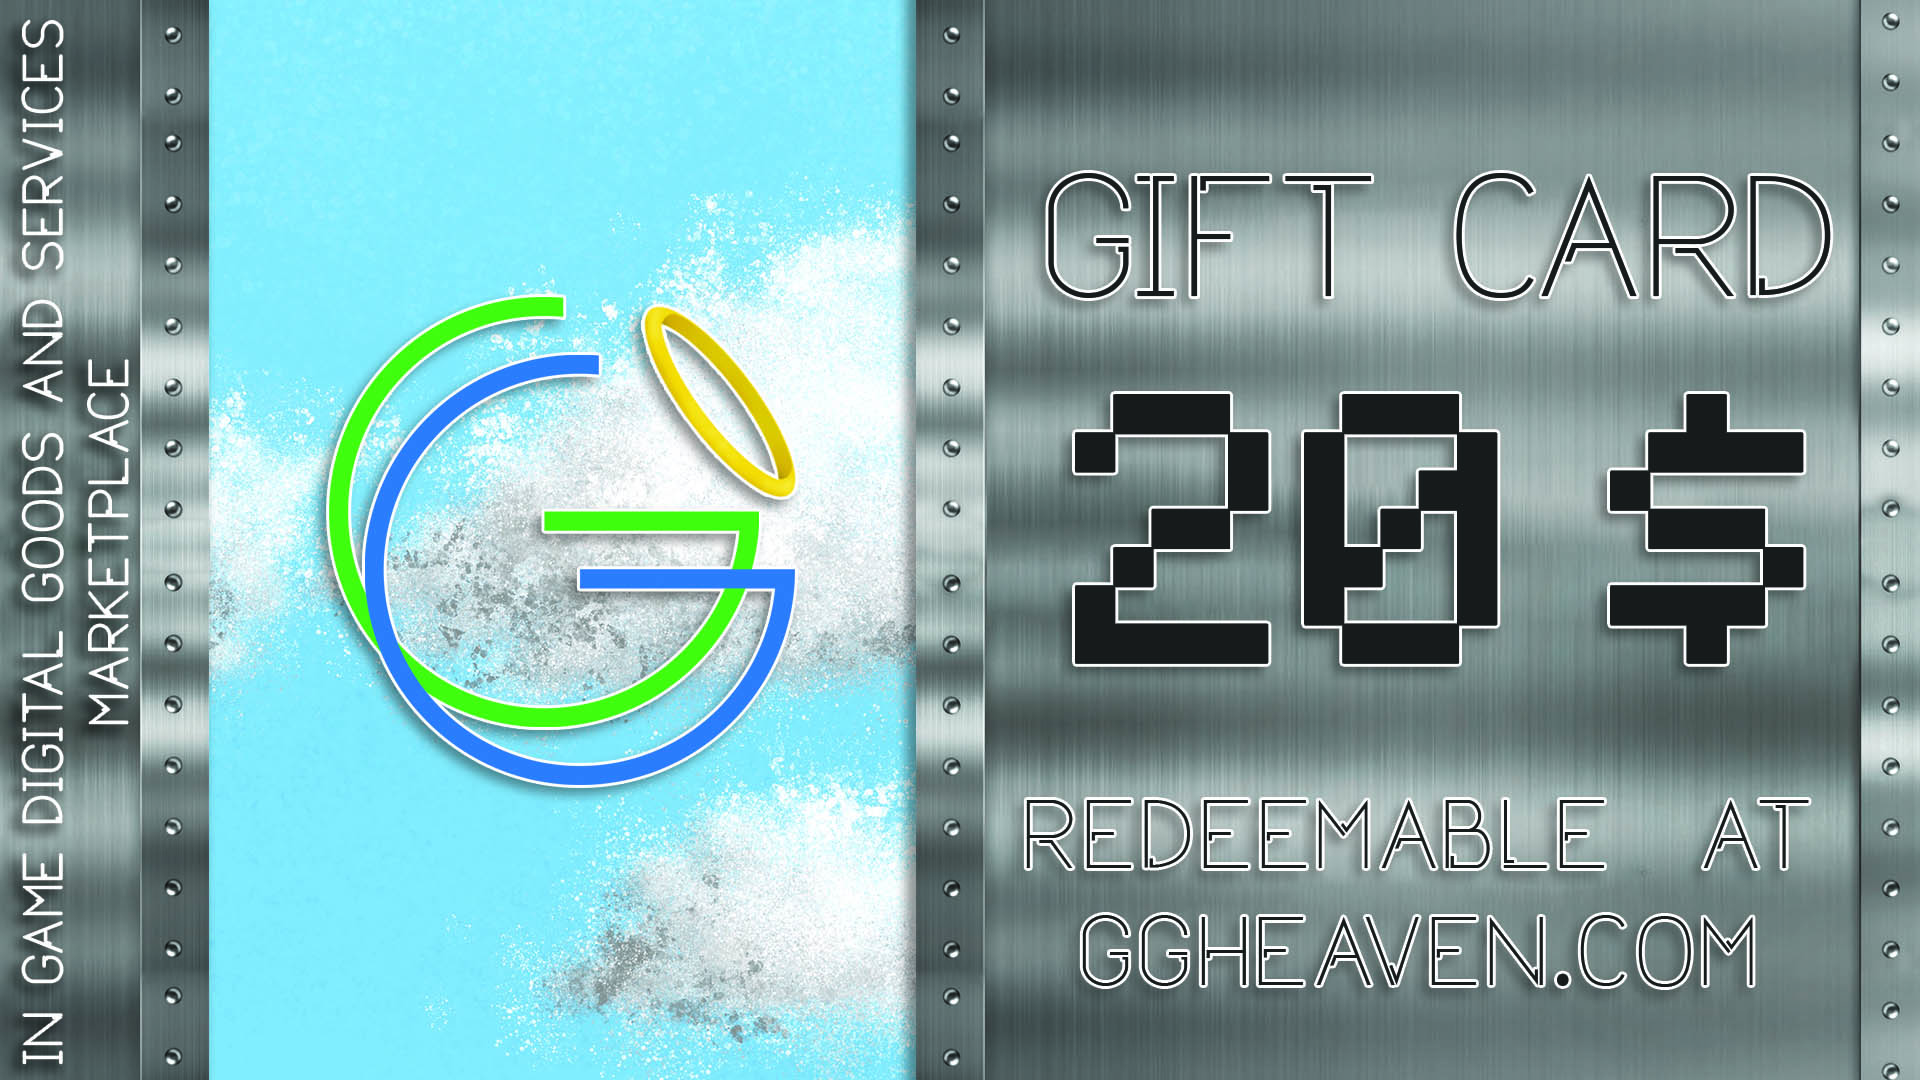 GGHeaven.com 20$ Gift Card